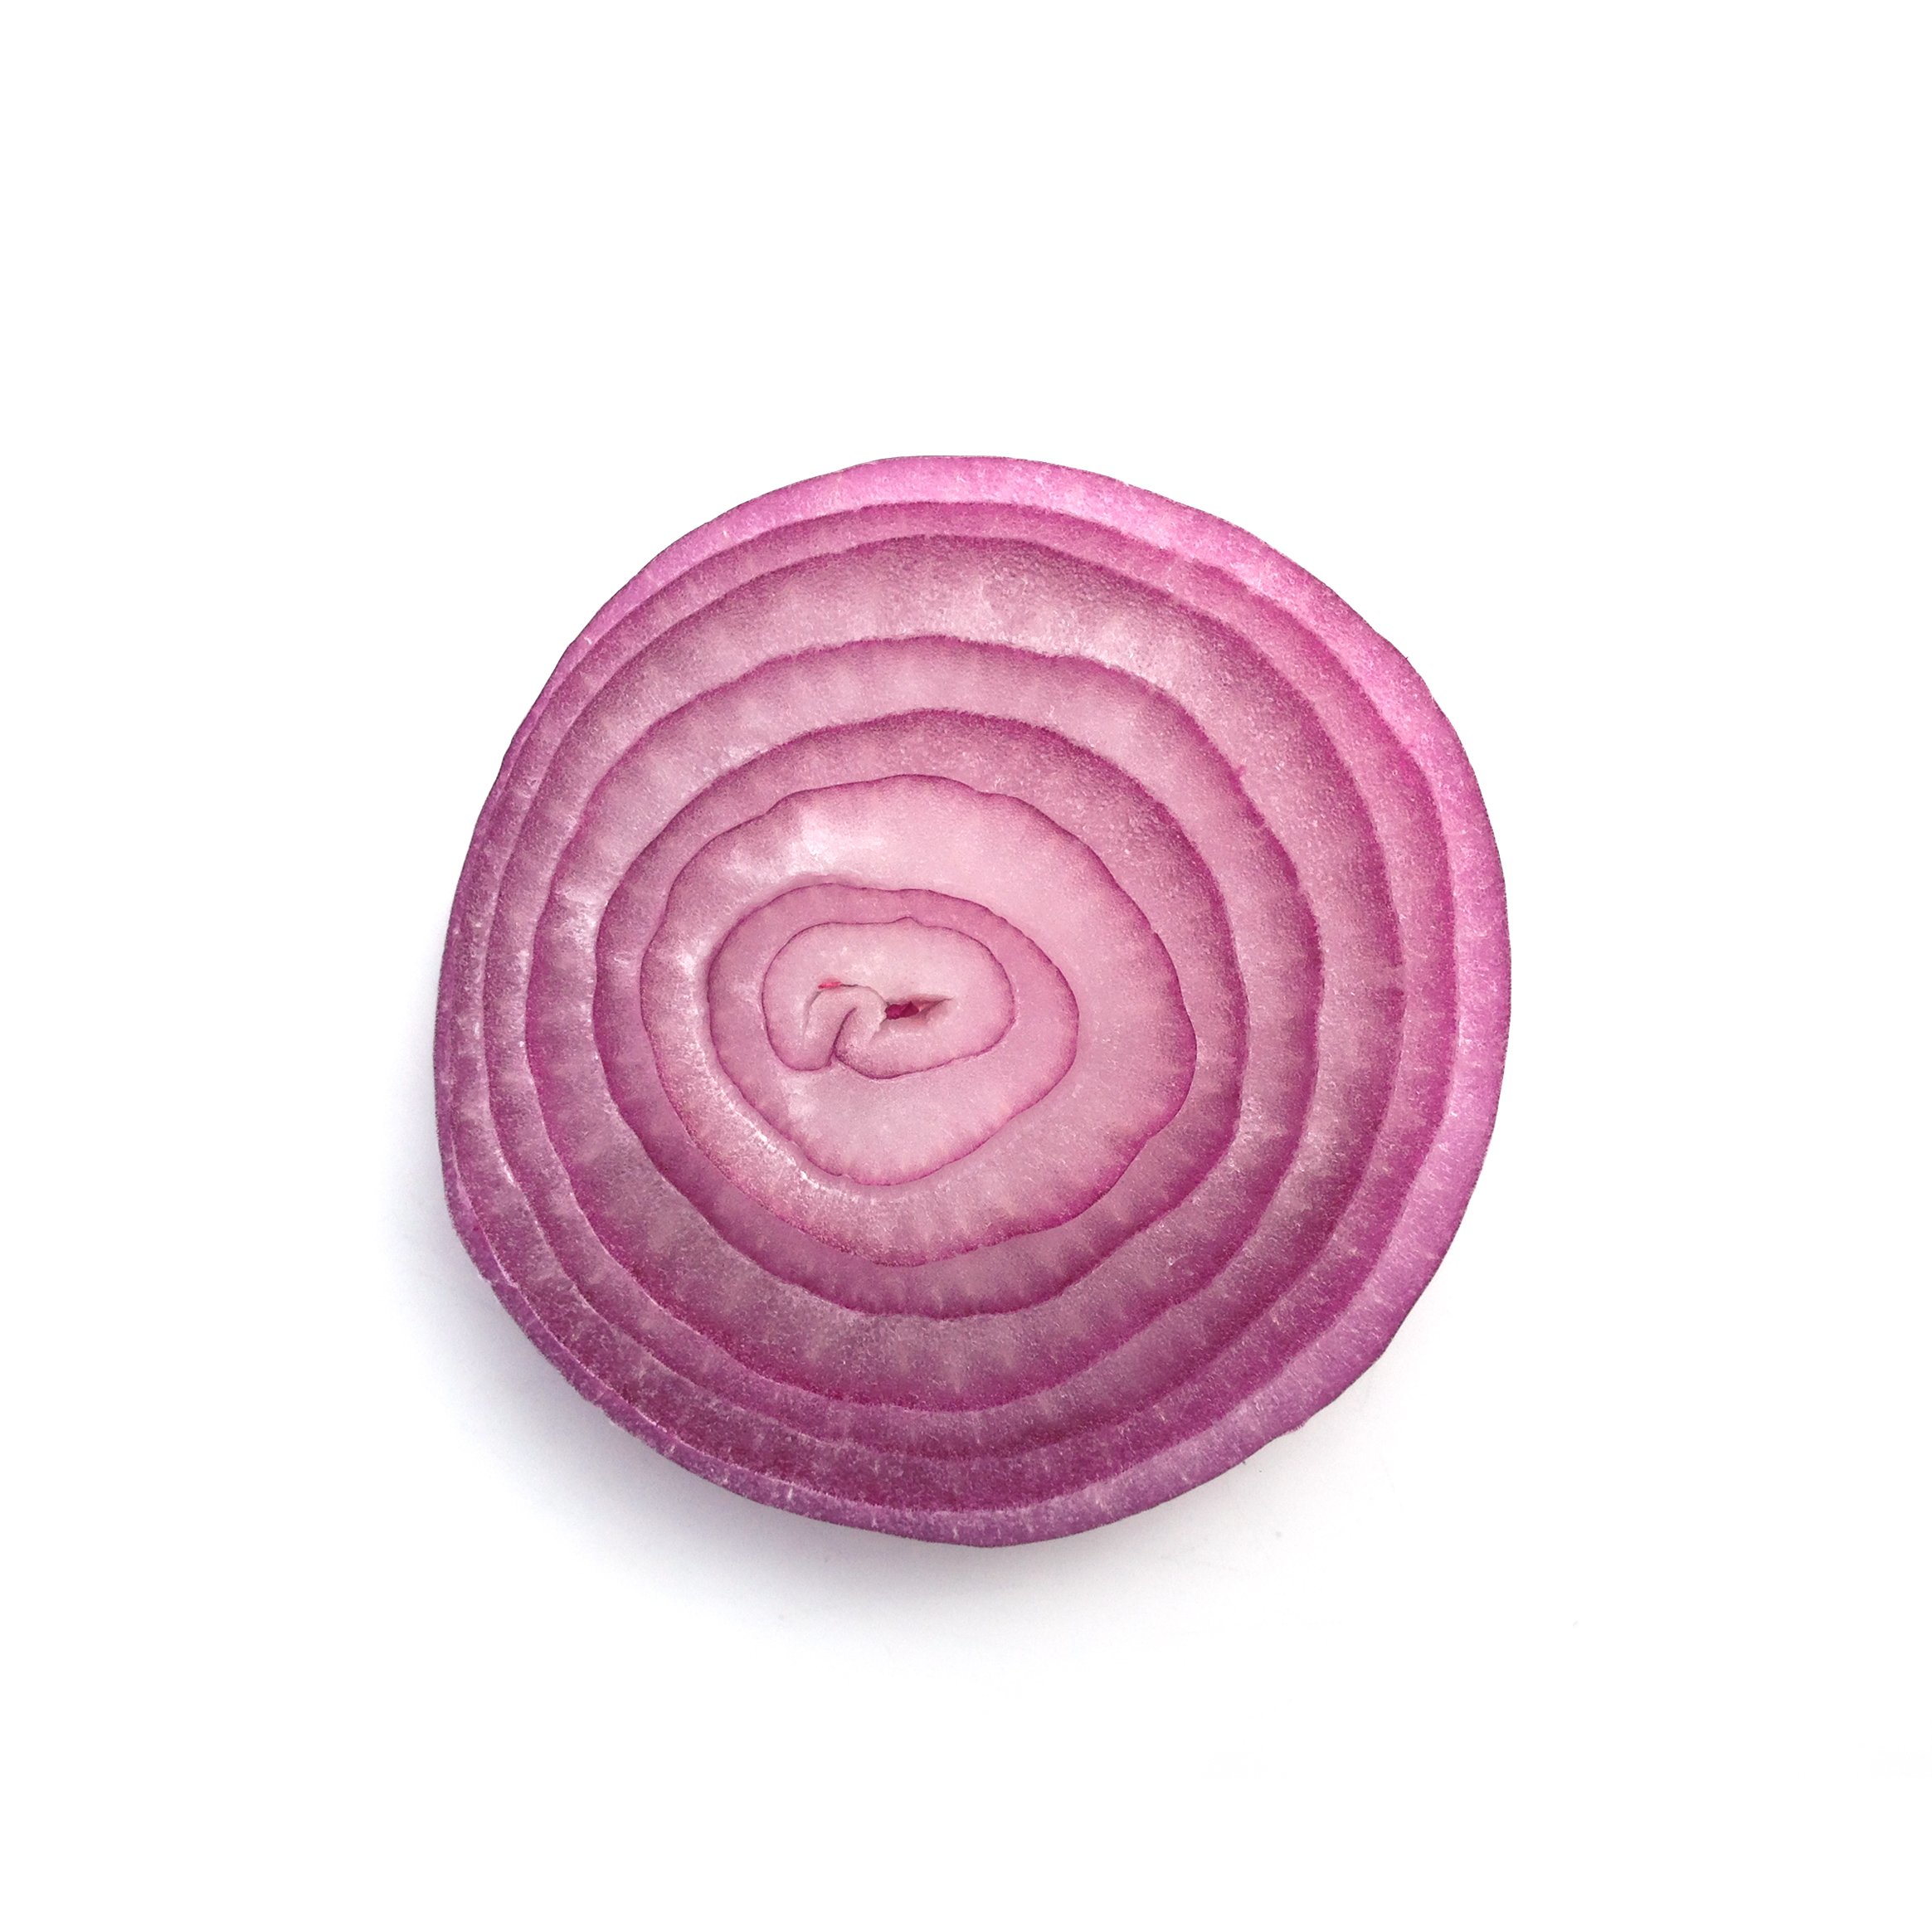 red-onion-hidden-beauty-food-marta-bocos.jpg